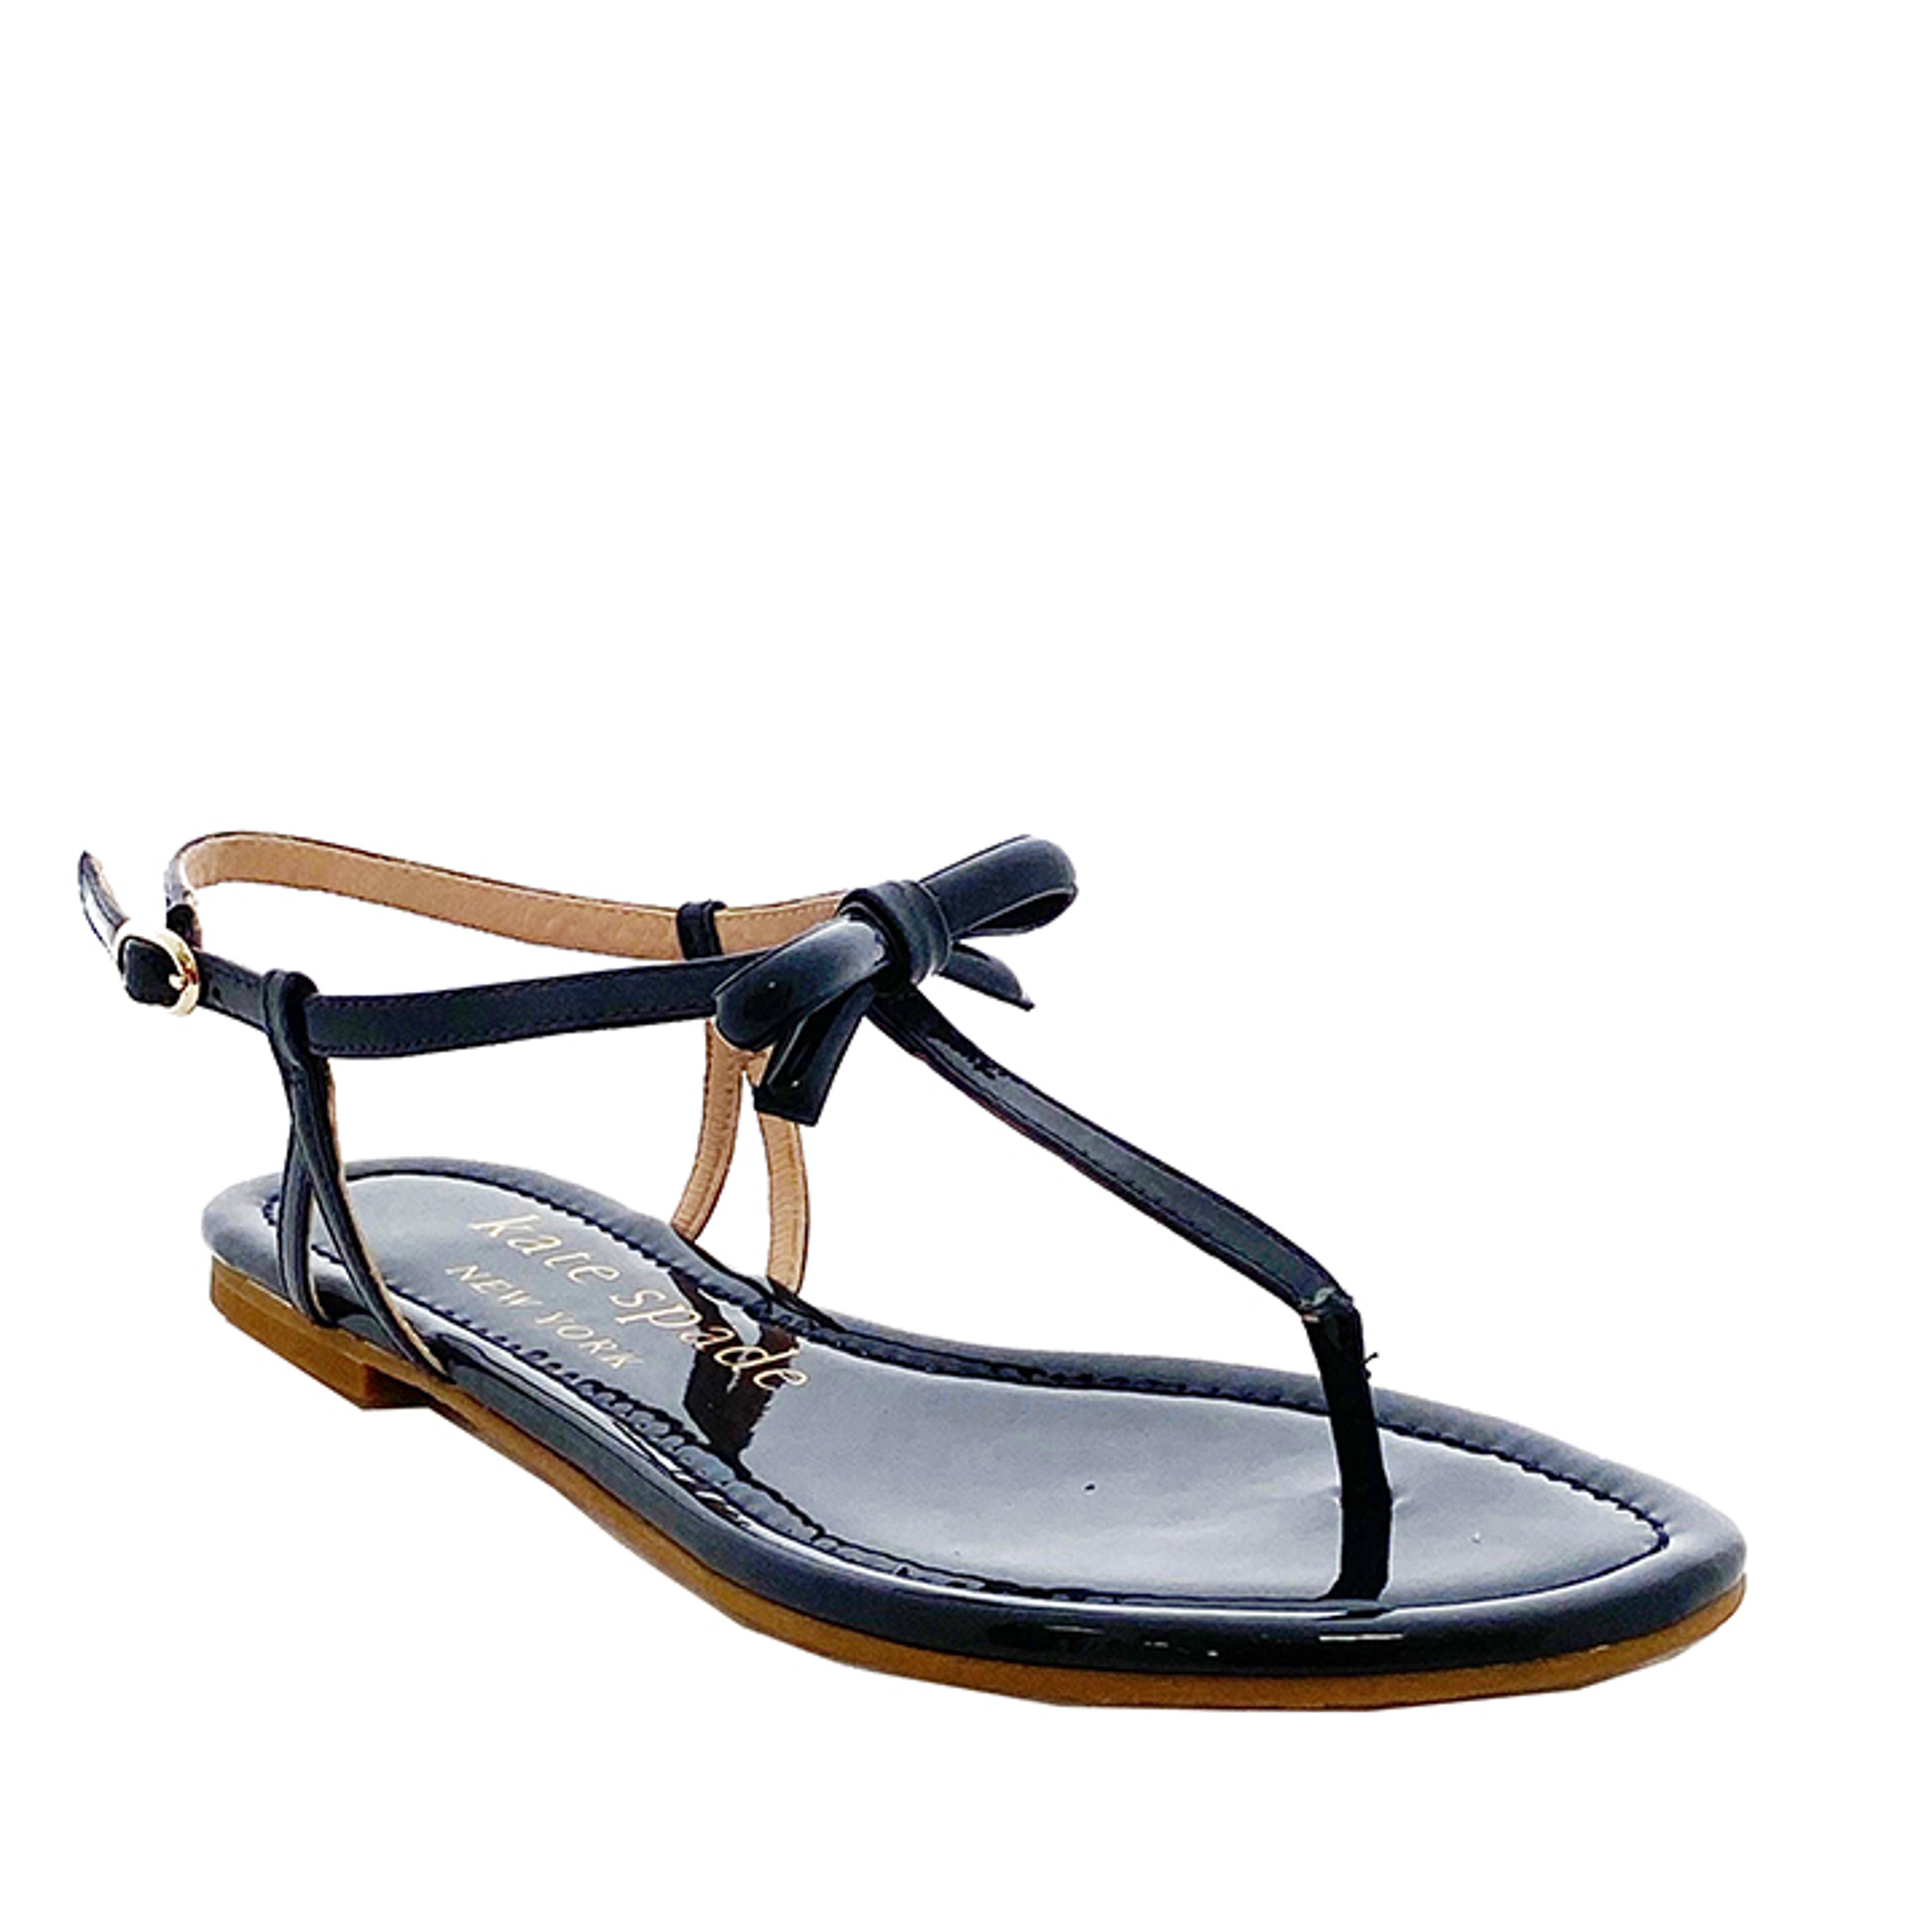 Piazza patent bow sandal : KempsBoutiqueandShoeSalon